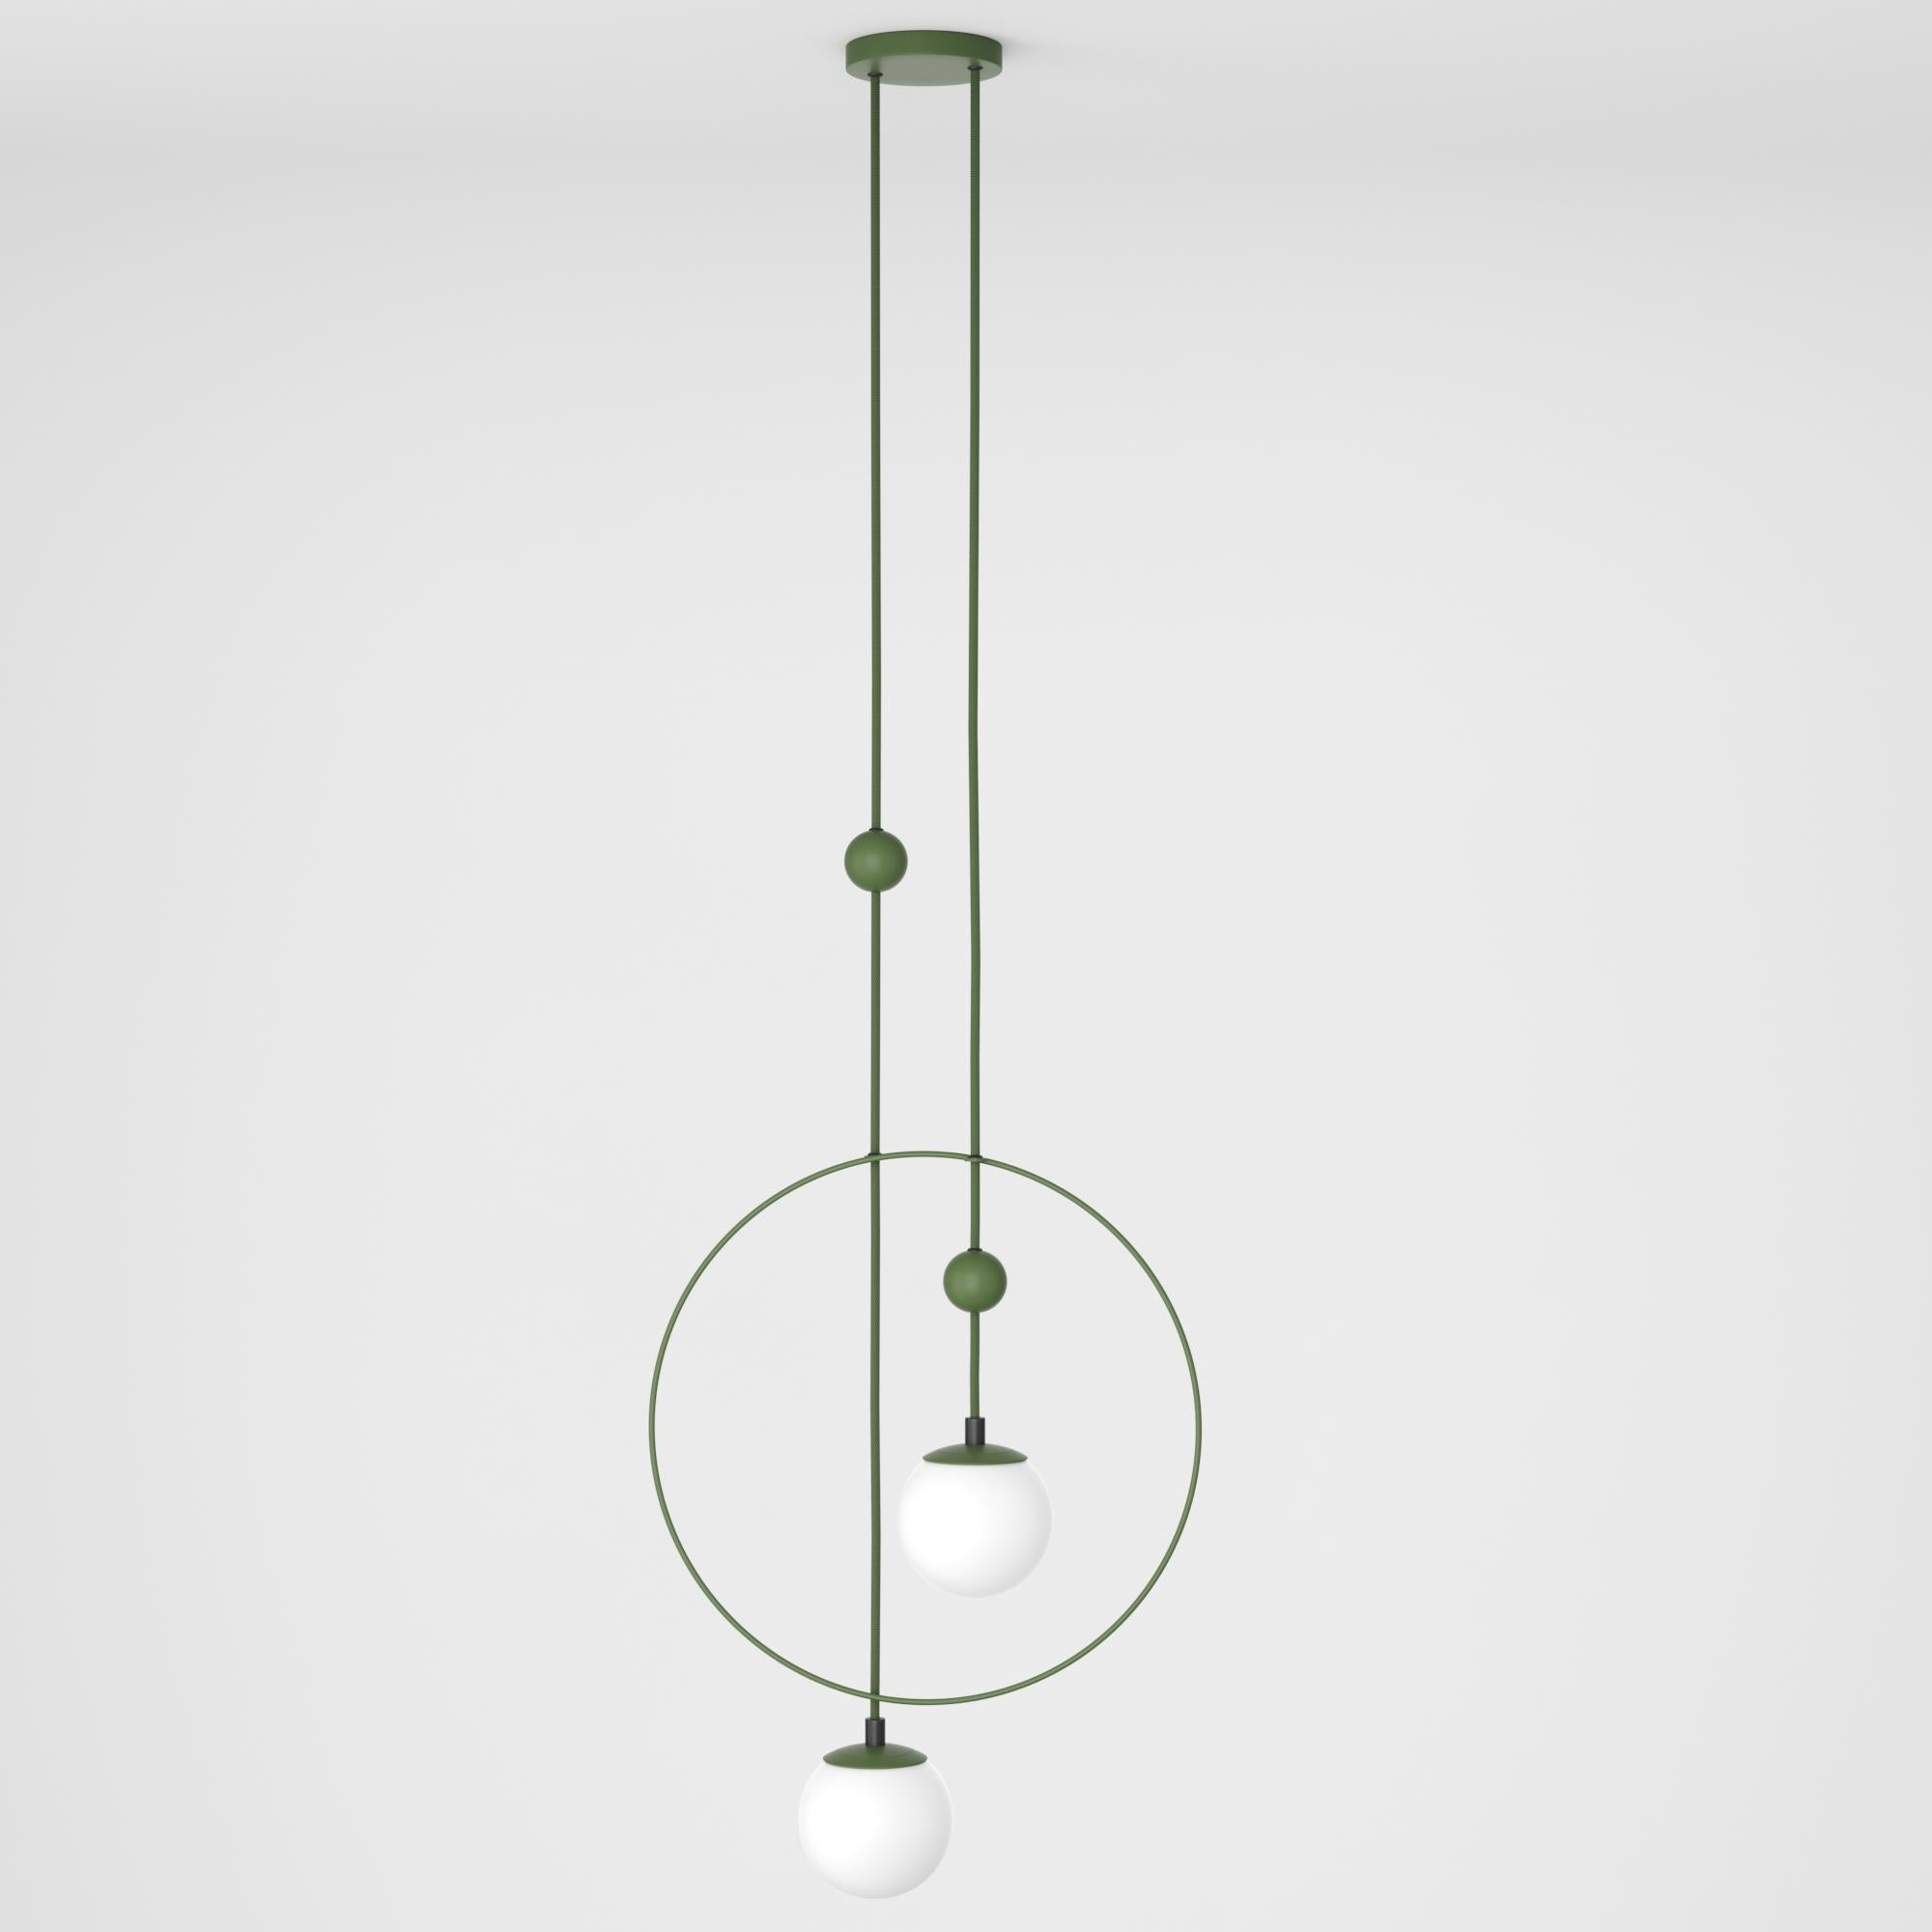 Danish Pendant Lamp, Modern Steel Lighting, Glass Sphere Edition For Sale 2